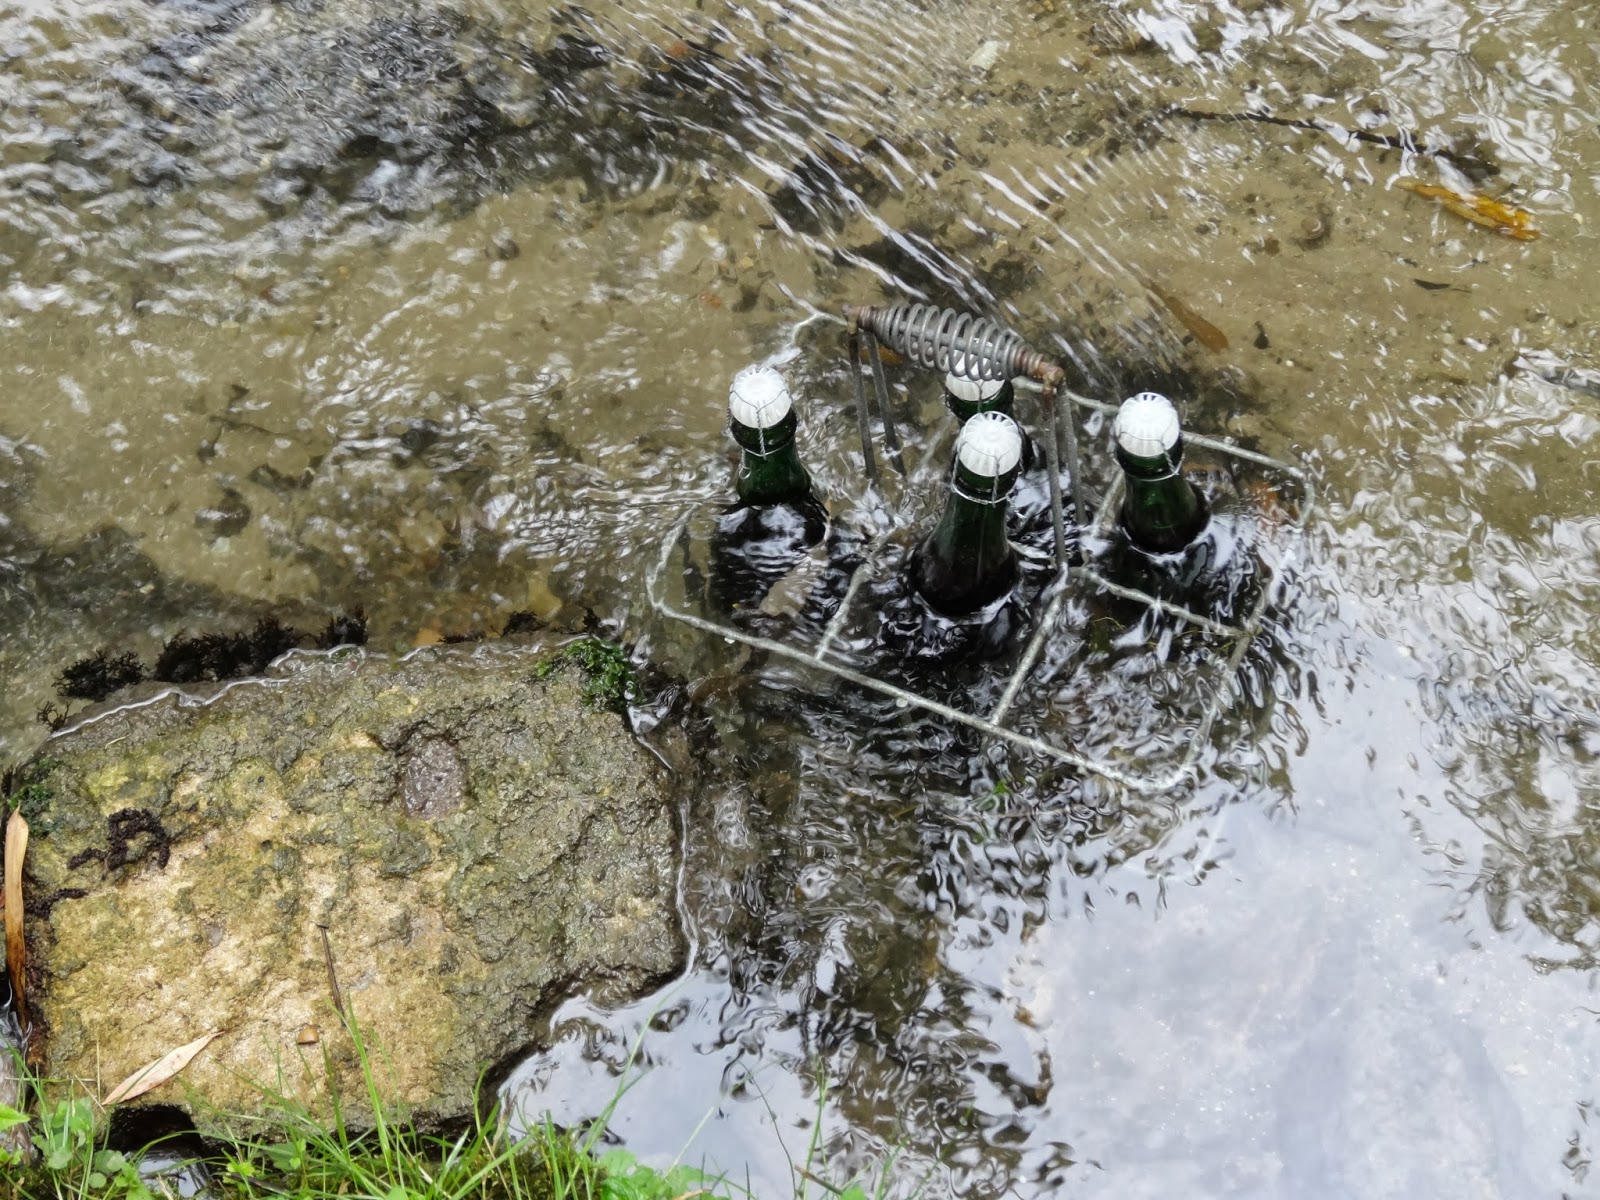 Des bouteilles de cidre attendent le visiteur, au frais dans la rivière...